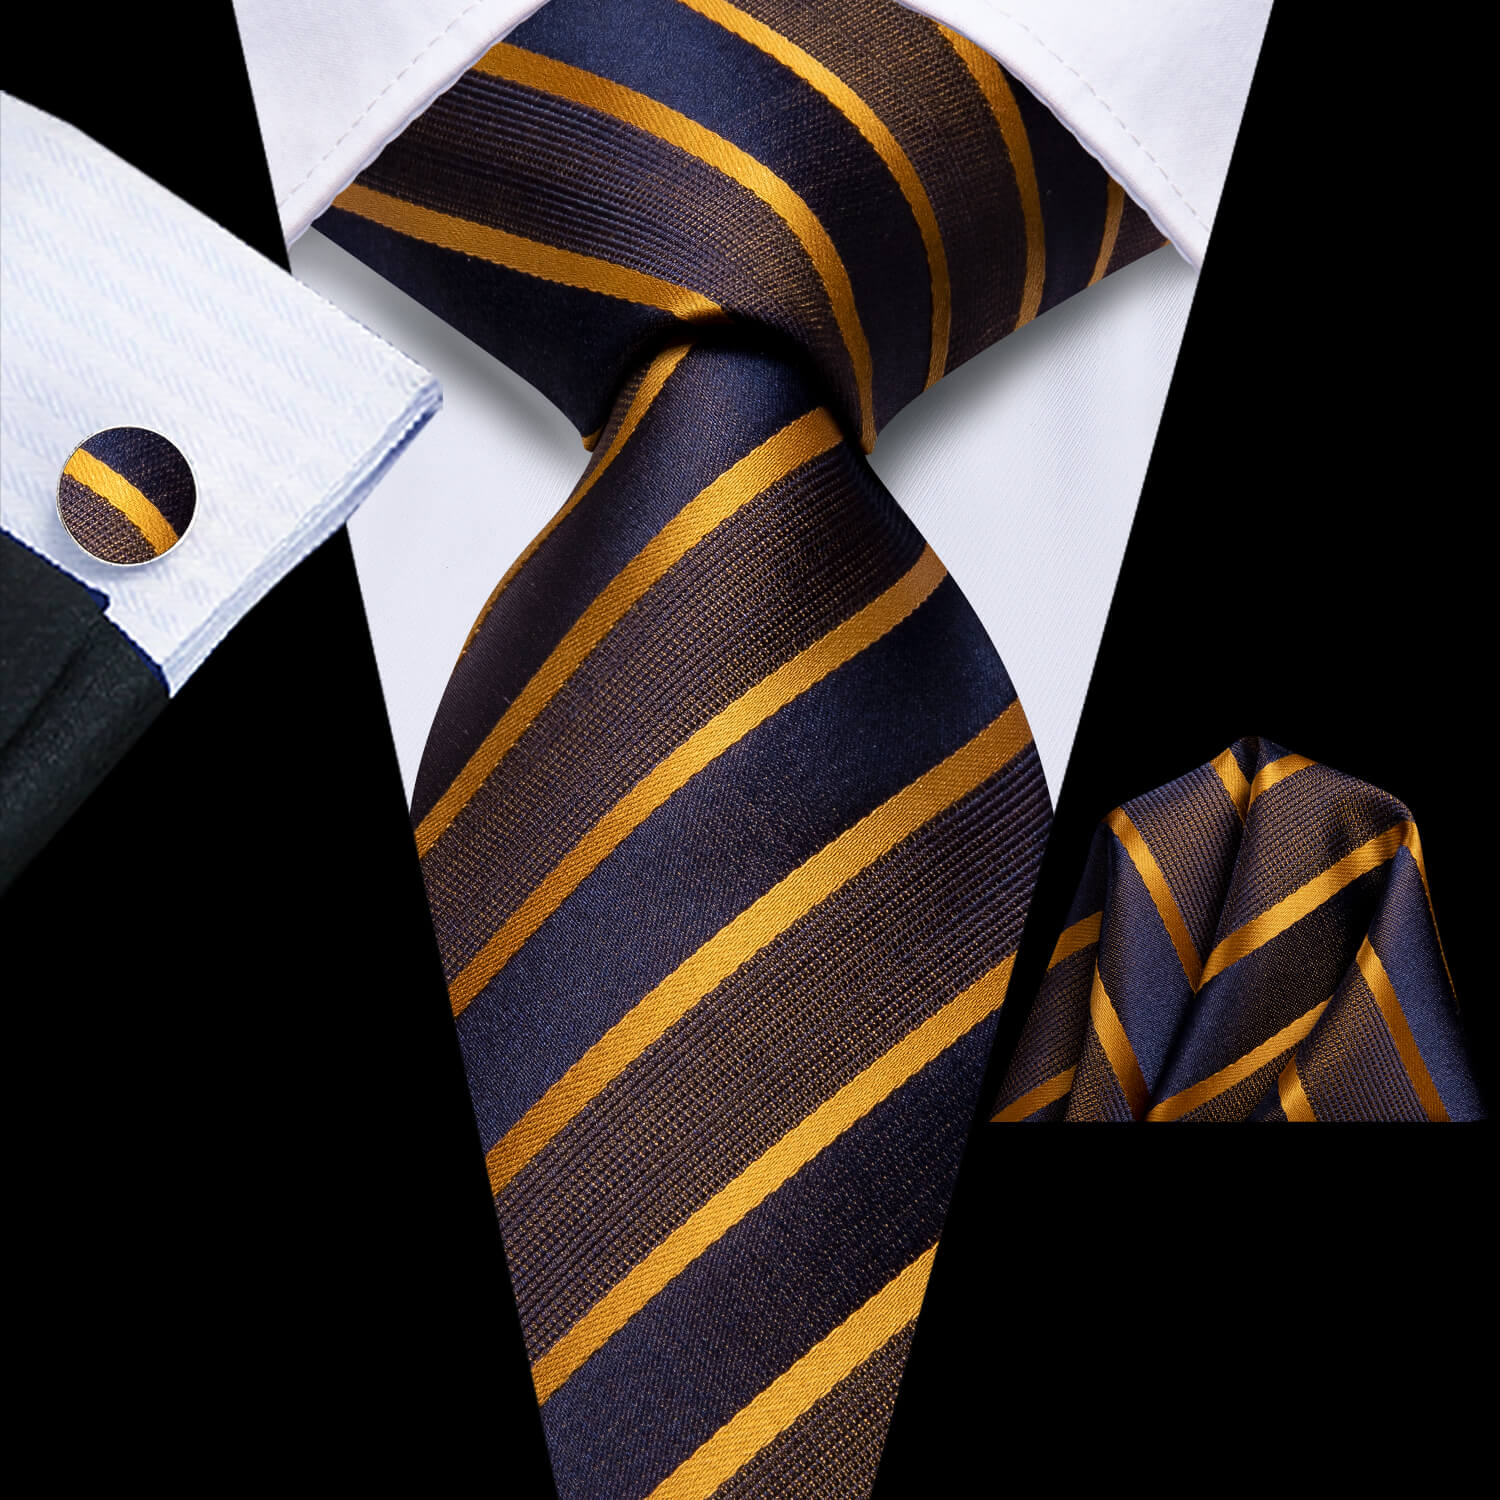 Hi-Tie Men's Tie Golden Brown Blue Silk Striped Tie Hanky Cufflinks Set